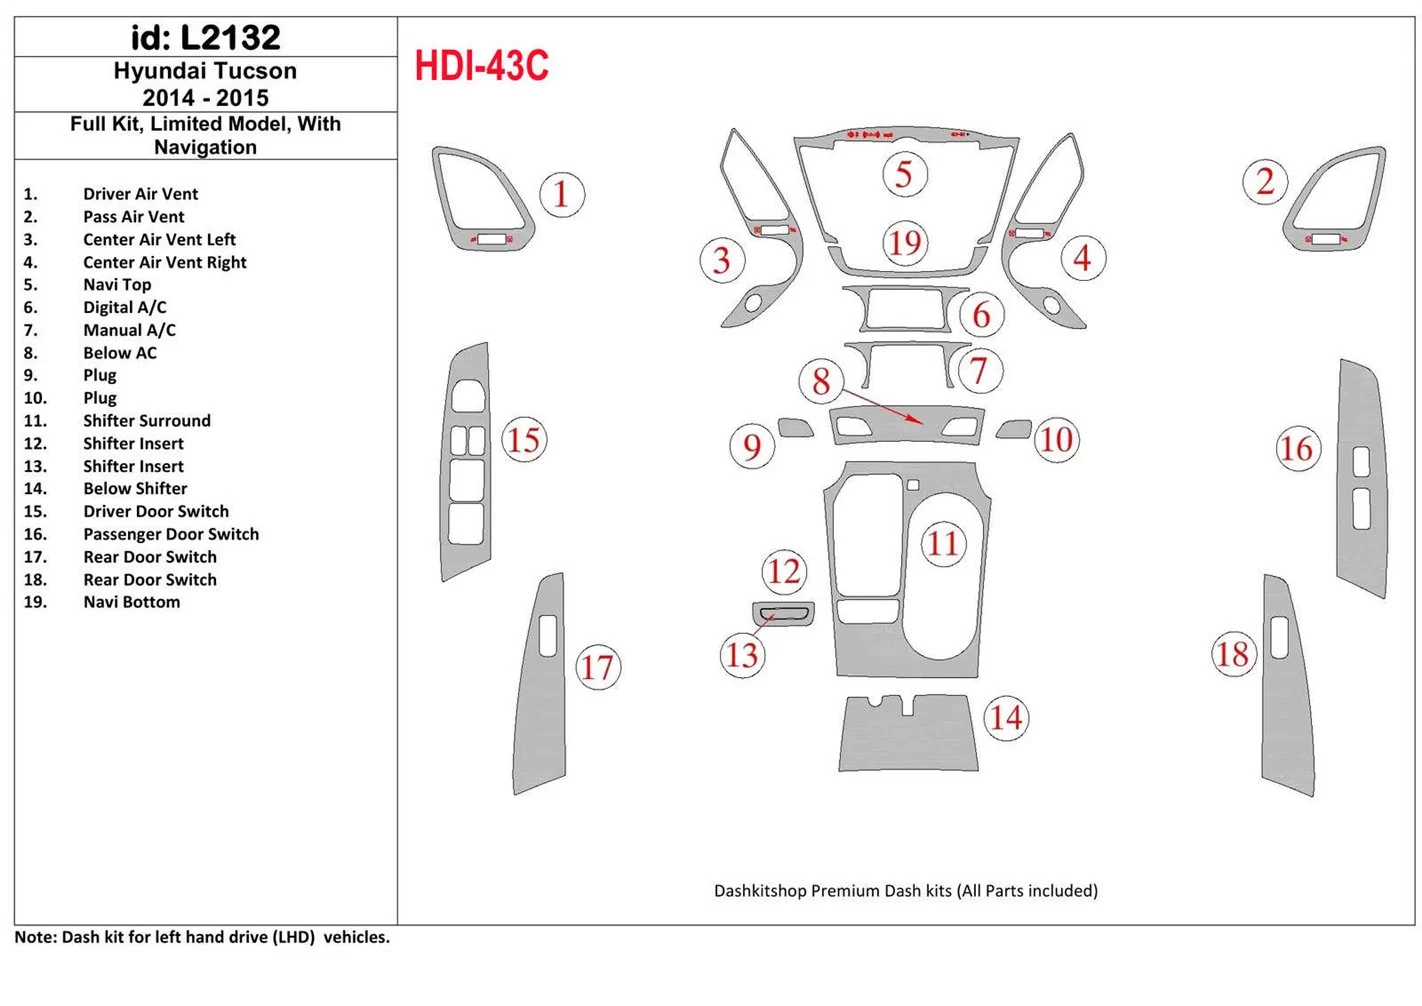 Hyundai Tucson 2014-2015 Ensemble Complet, Sans NAVI, Limited Model BD Kit la décoration du tableau de bord - 1 - habillage deco